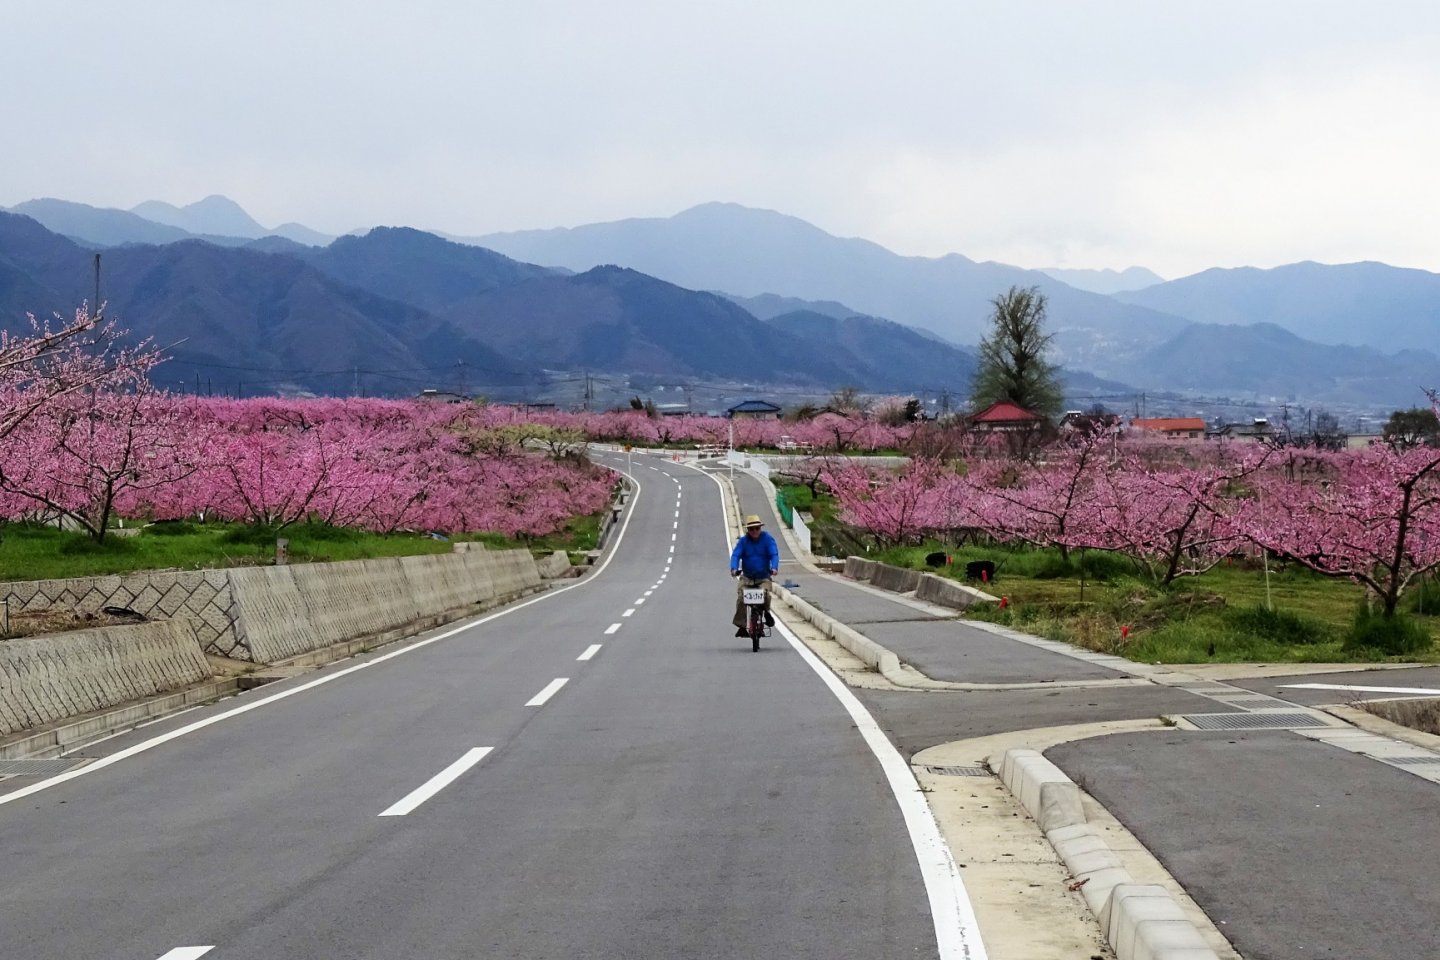 ปั่นจักรยานท่ามกลางทะเลดอกไม้สีชมพู